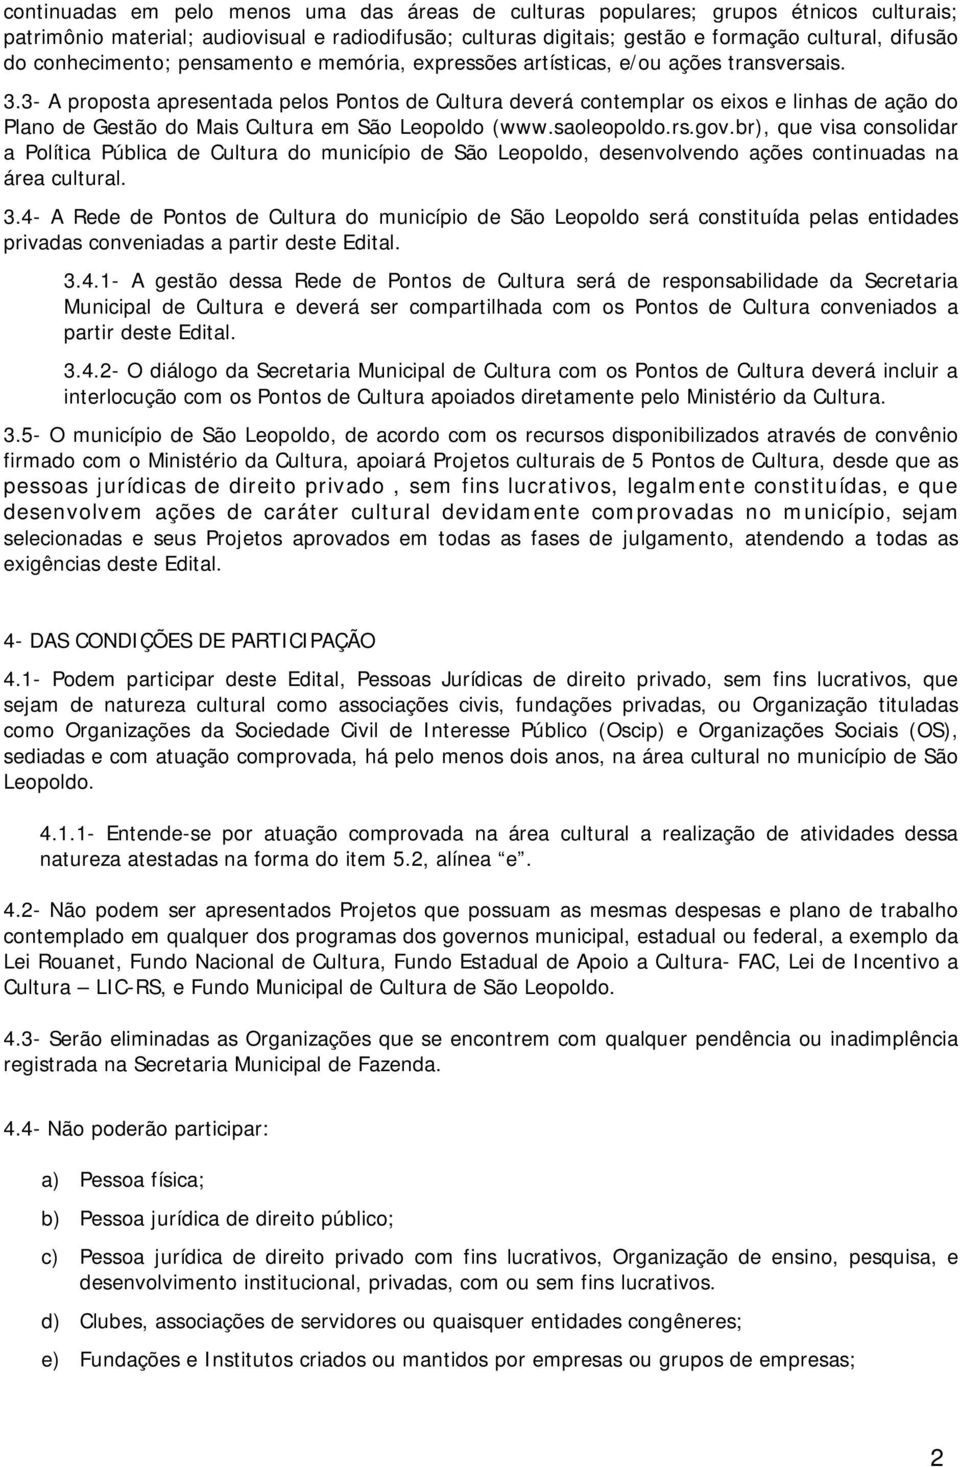 3- A proposta apresentada pelos Pontos de Cultura deverá contemplar os eixos e linhas de ação do Plano de Gestão do Mais Cultura em São Leopoldo (www.saoleopoldo.rs.gov.